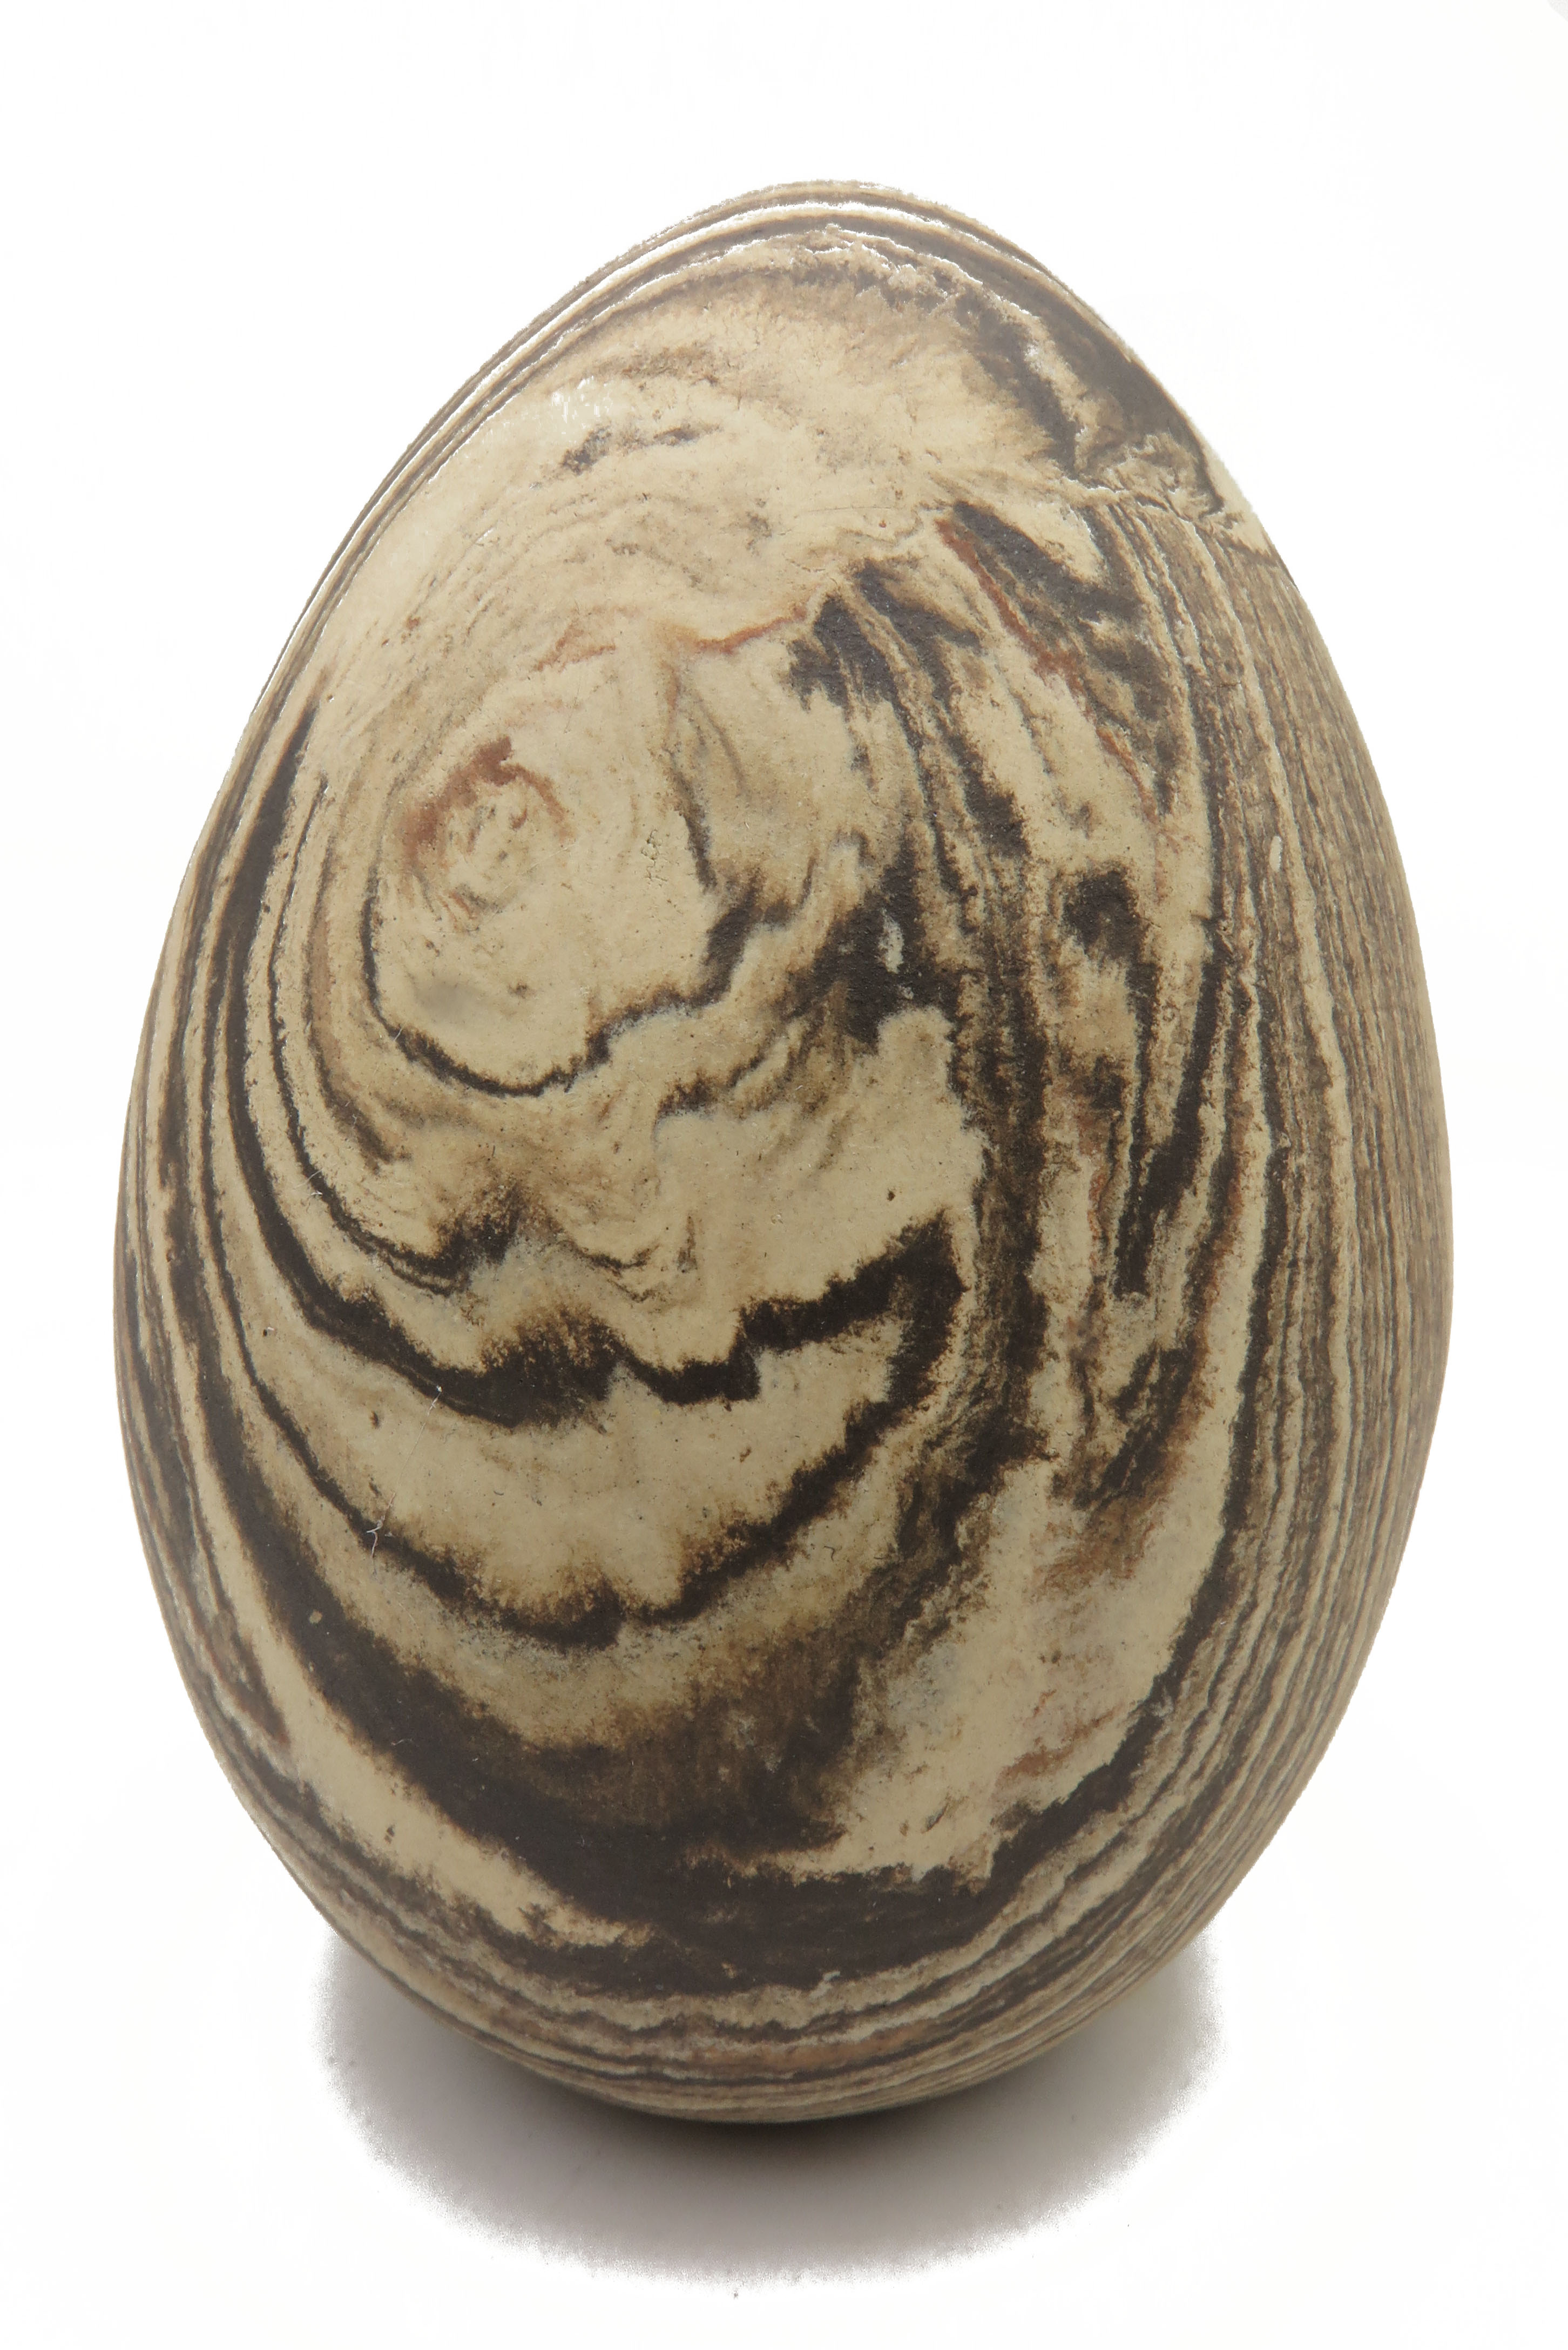  Eier wie aus Stein gehauen/ L 19 cm